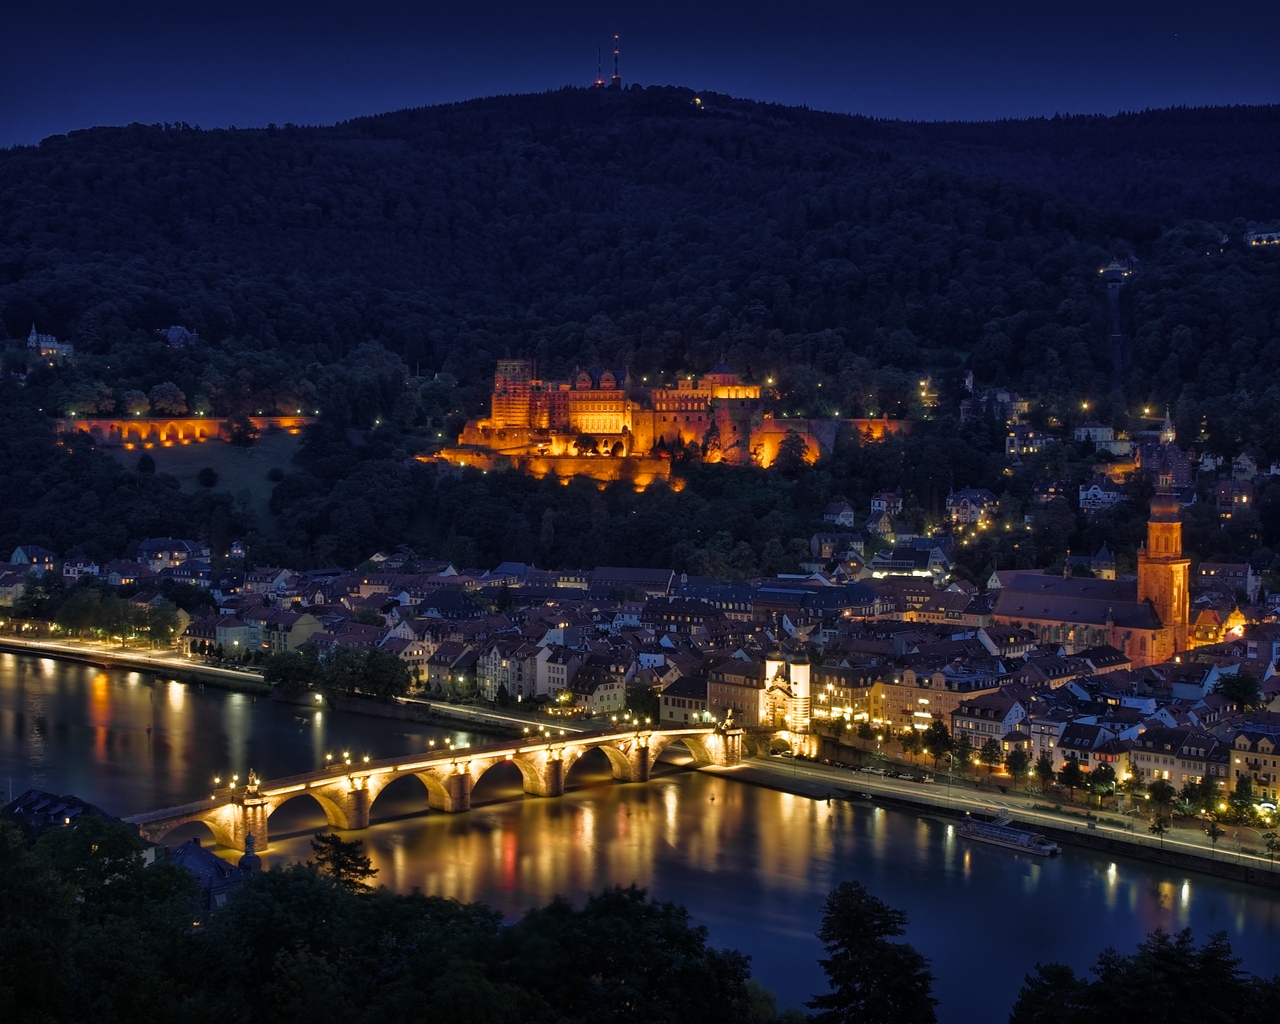 Heidelberg Night Lights for 1280 x 1024 resolution